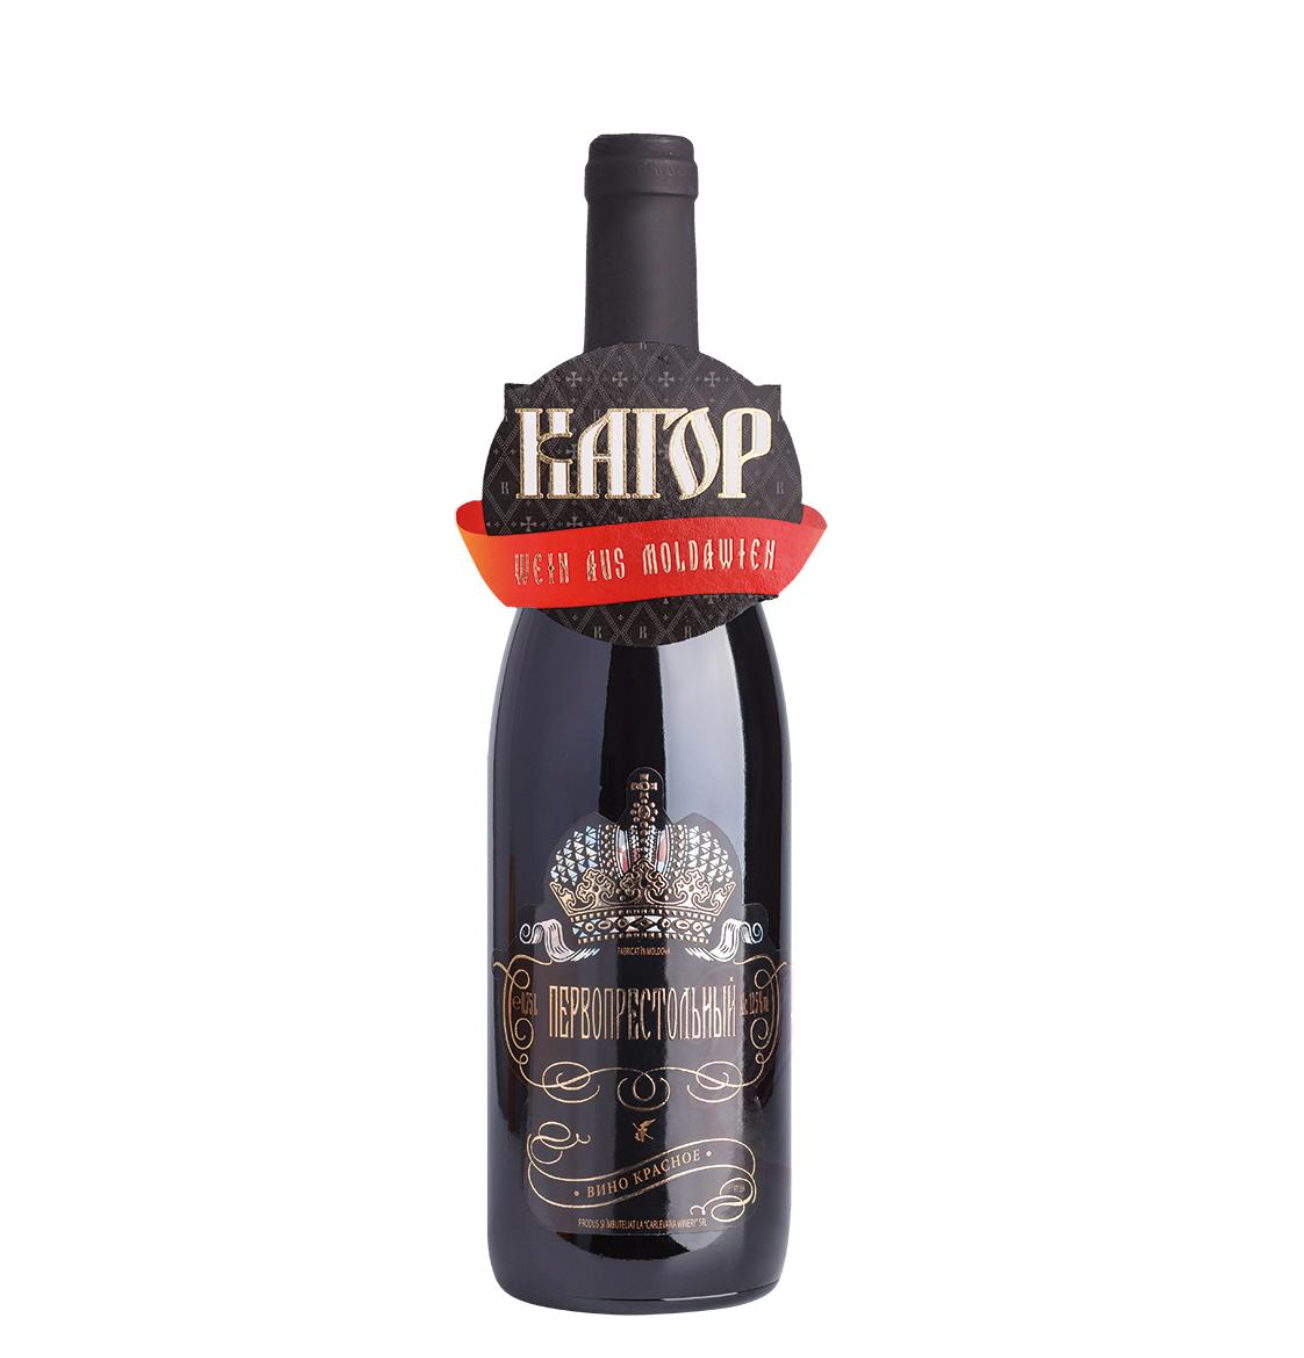 Rode wijn "Cahors de Eerste Troon" halfzoet, 12,5% alc. 750ml.